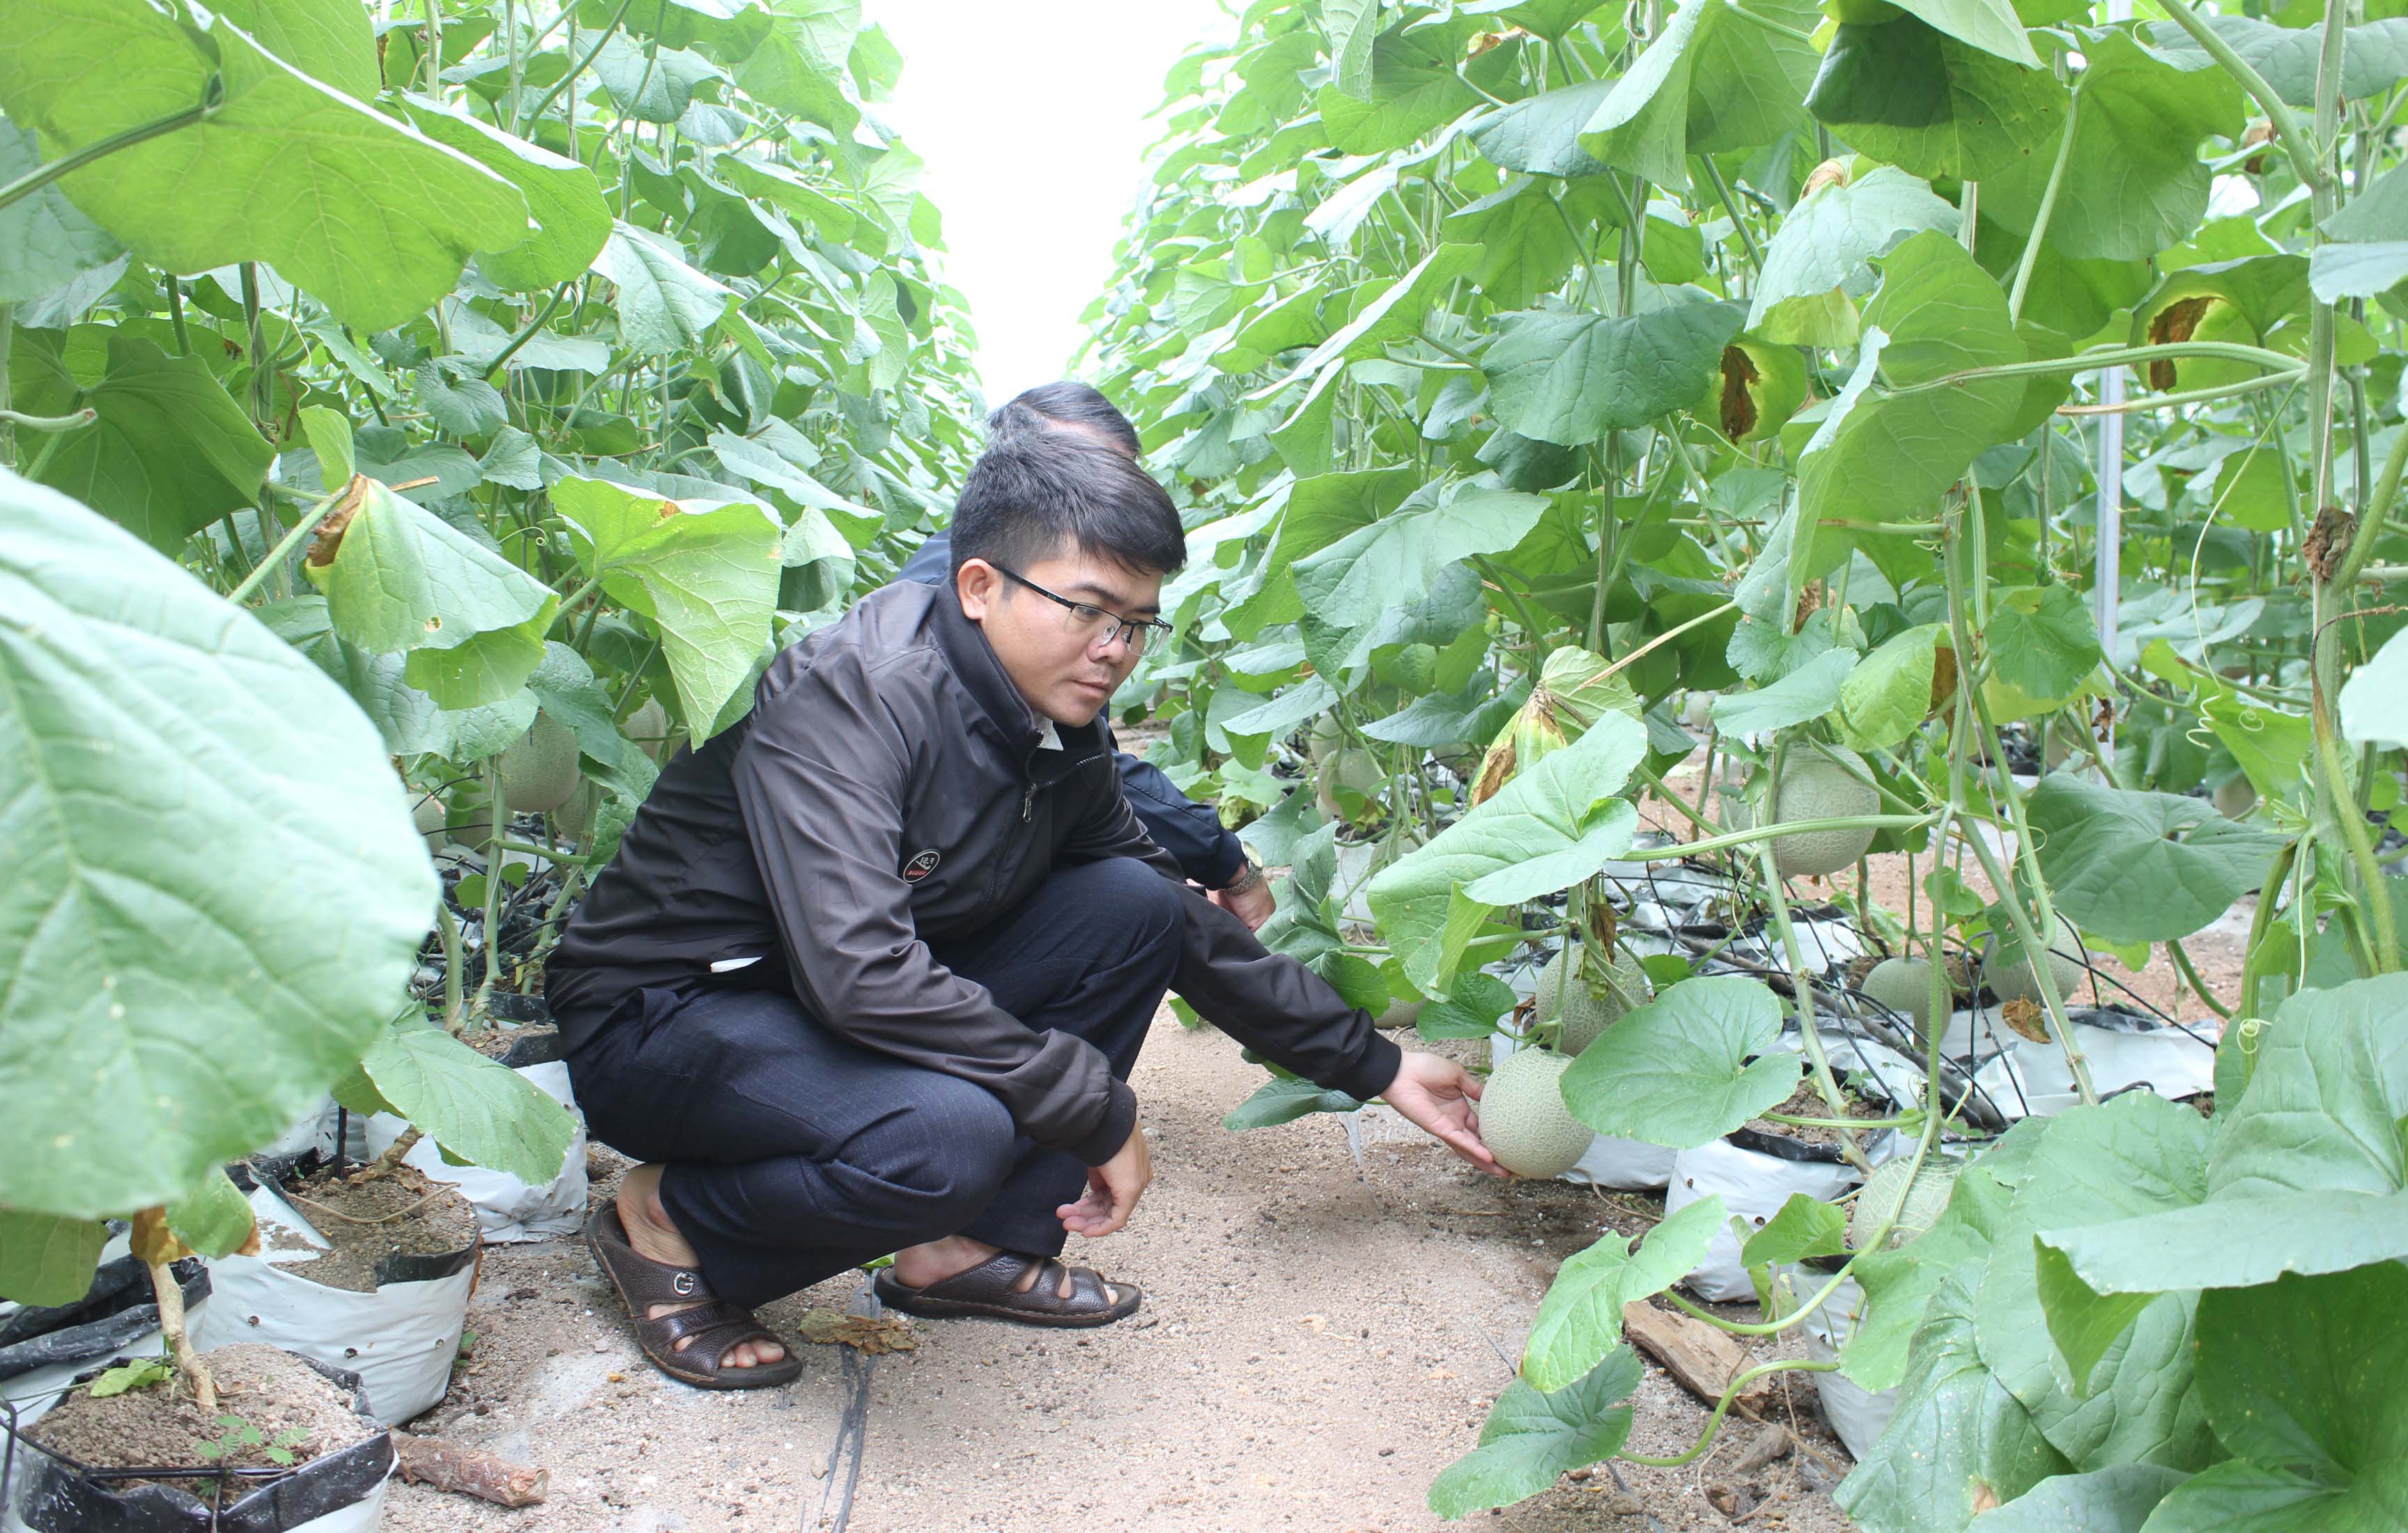 Huyện Chư Păh chuyển đổi 1 ha cà phê sang trồng dưa lưới mang lại hiệu quả kinh tế cao. Ảnh: Nguyễn Diệp